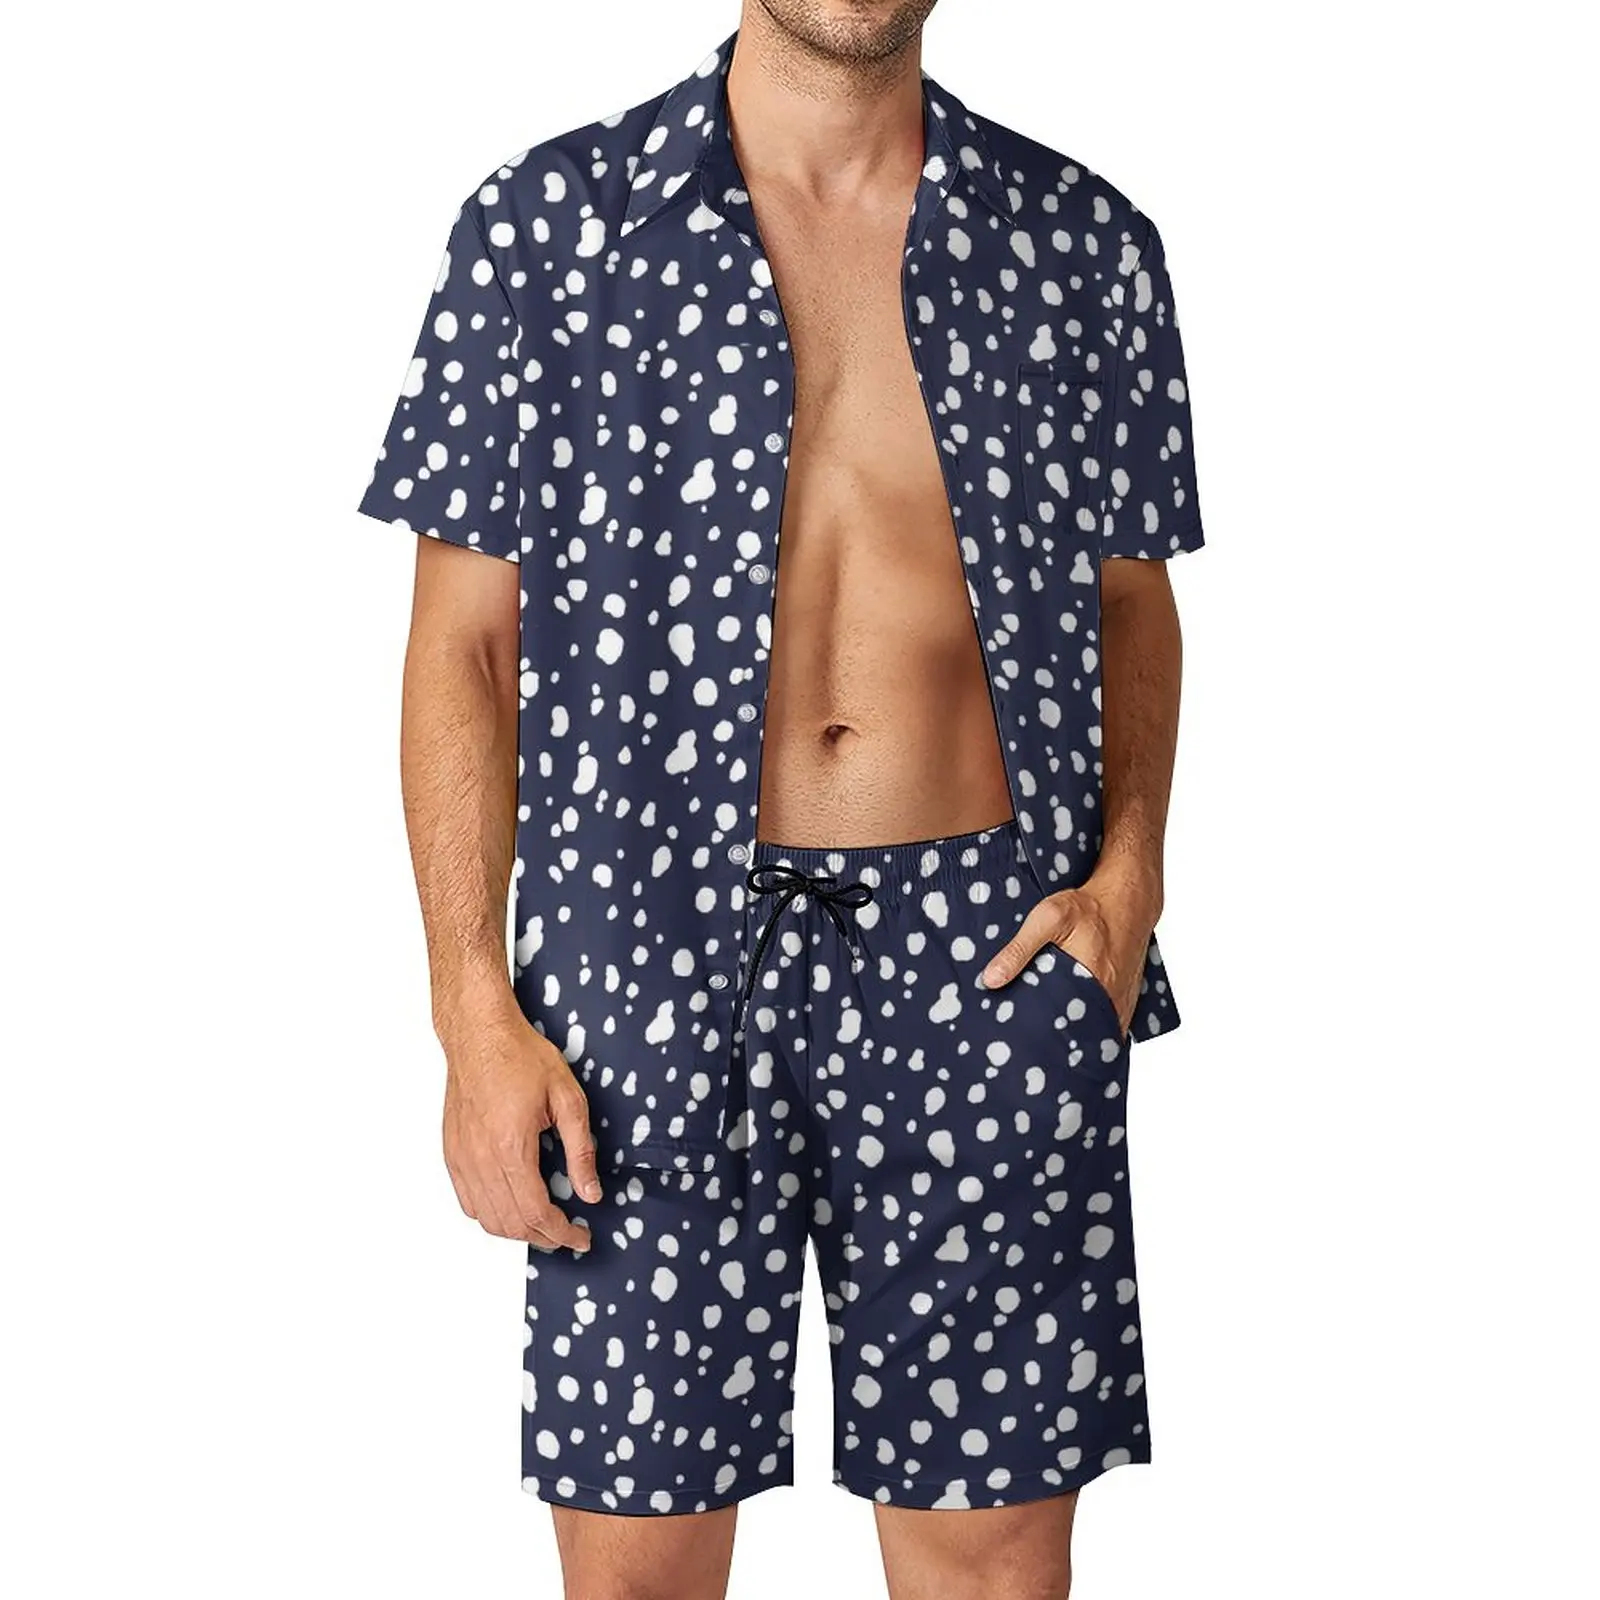 

Костюм пляжный мужской с графическим принтом, Повседневная рубашка с шортами и коротким рукавом, комплект из темно-синего и белого цветов, одежда большого размера с далматинским принтом